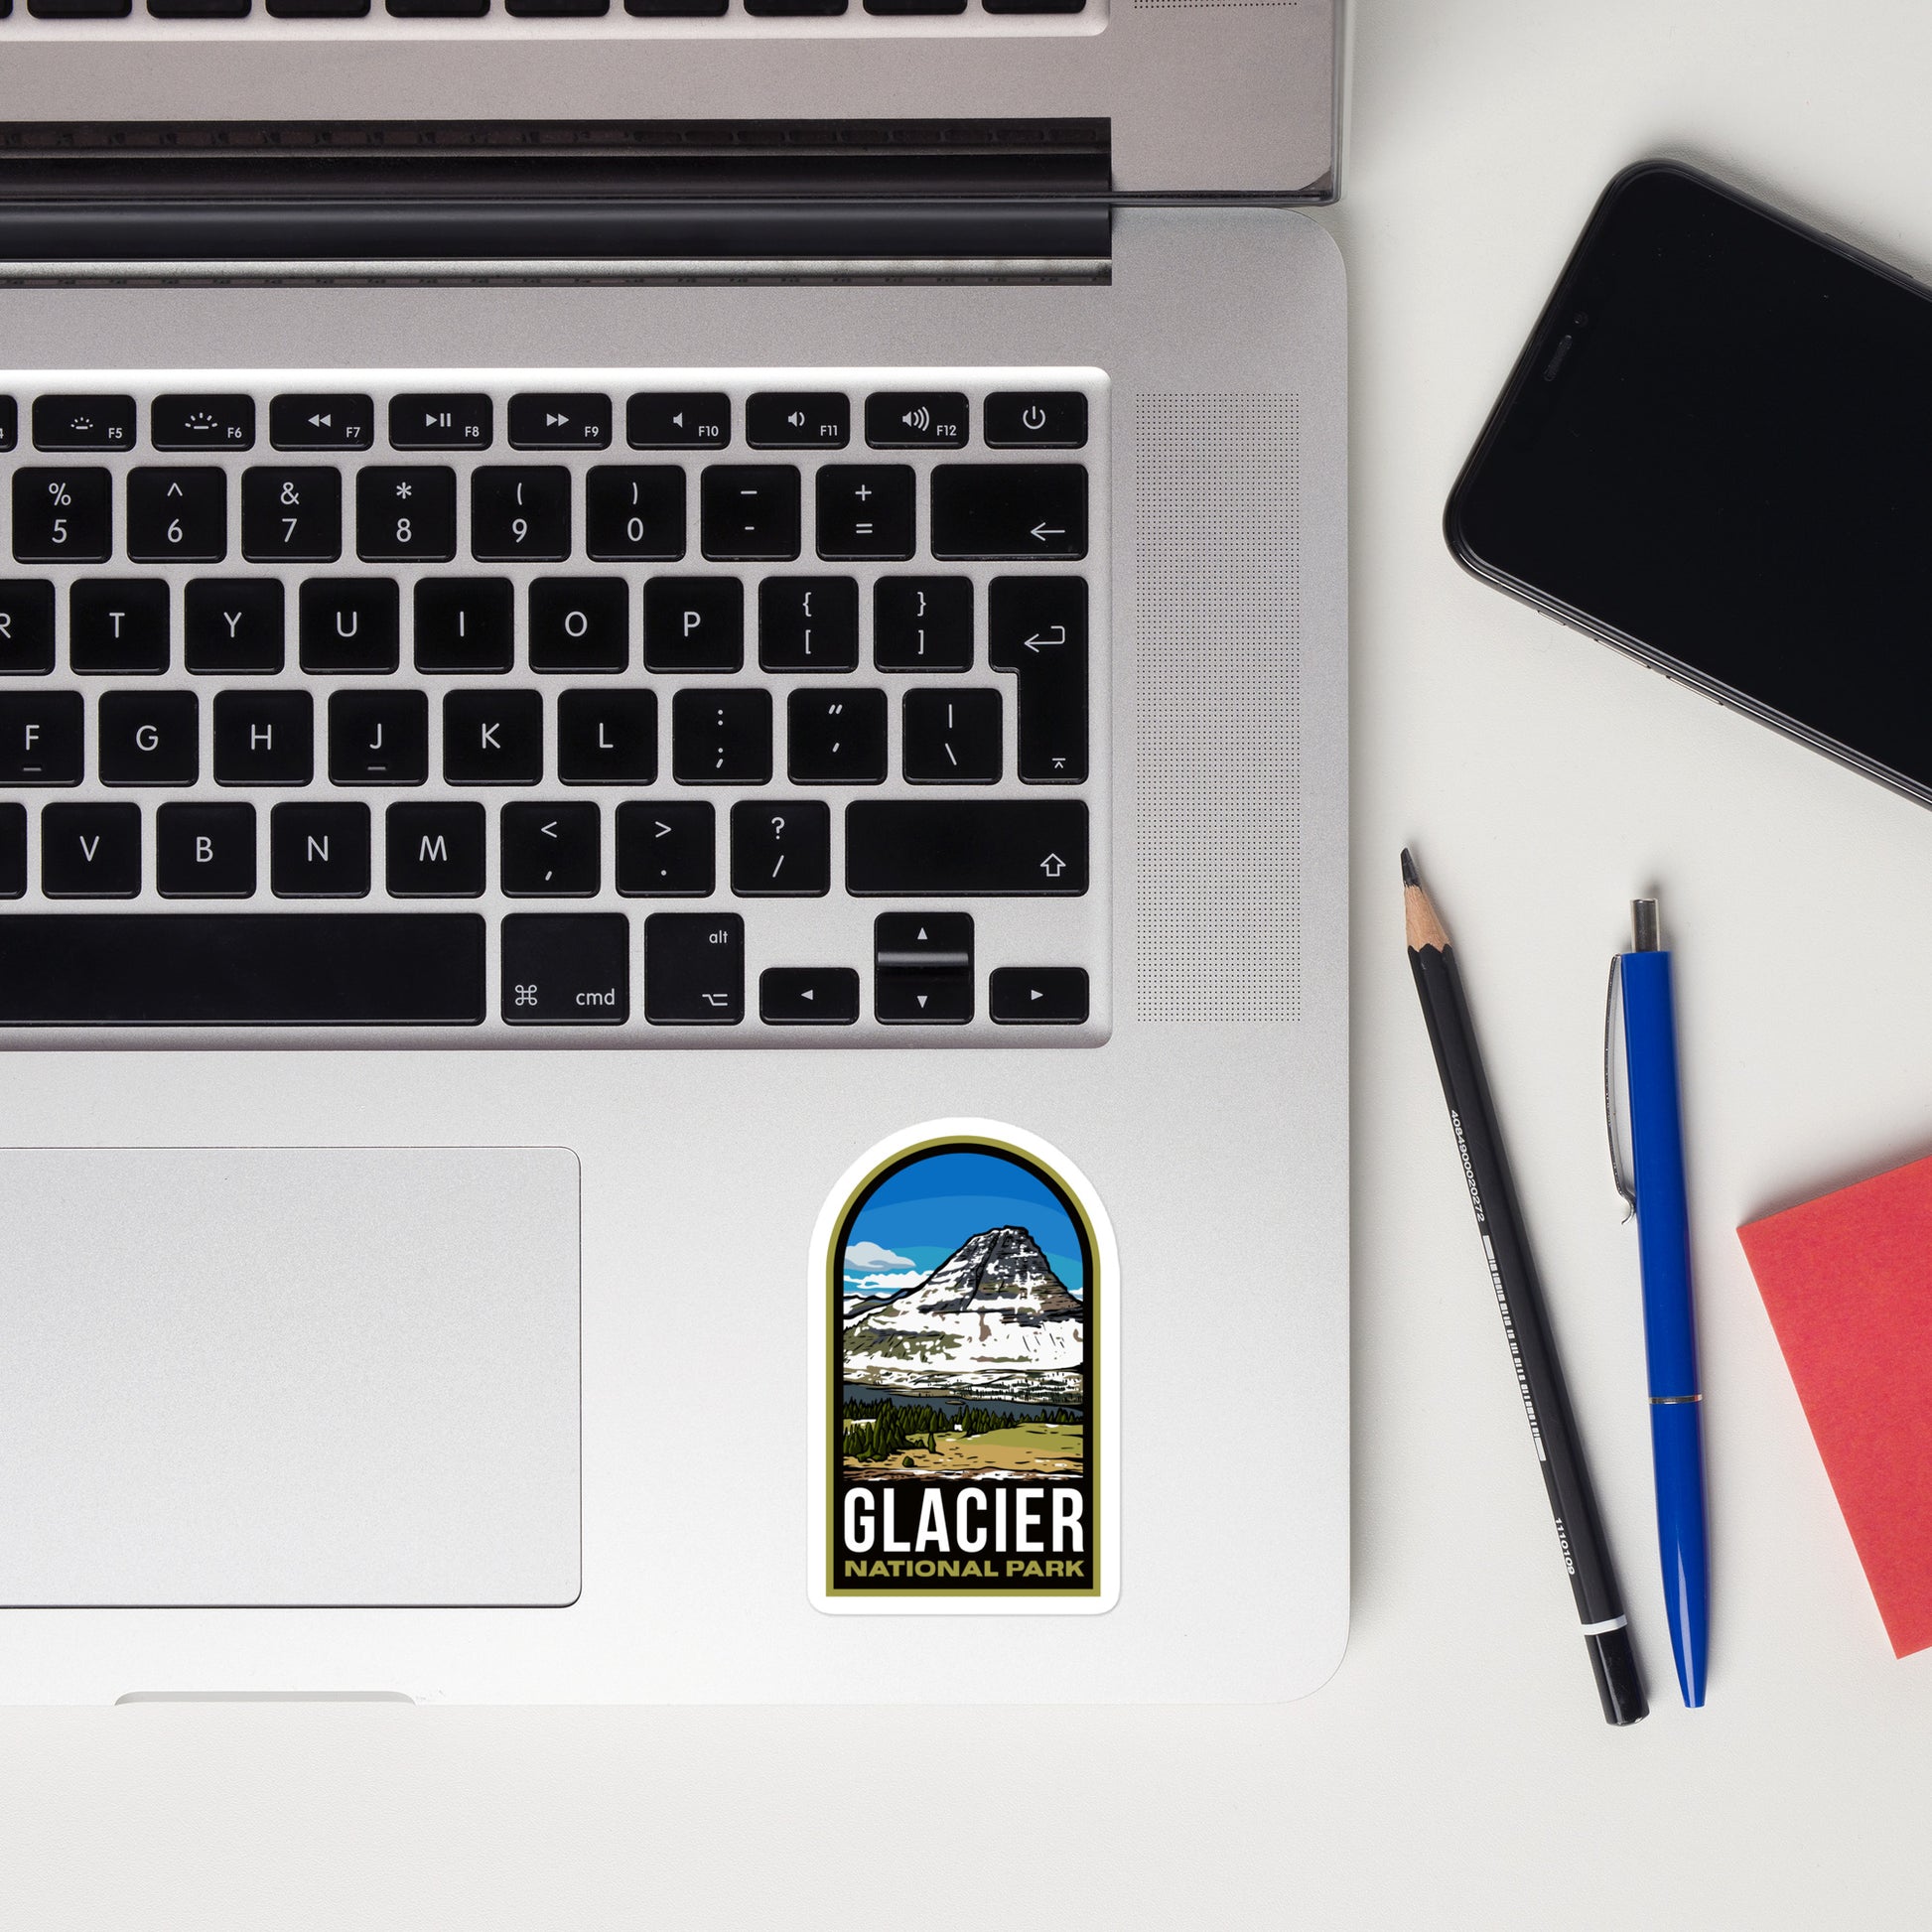 A sticker of Glacier National Park on a laptop